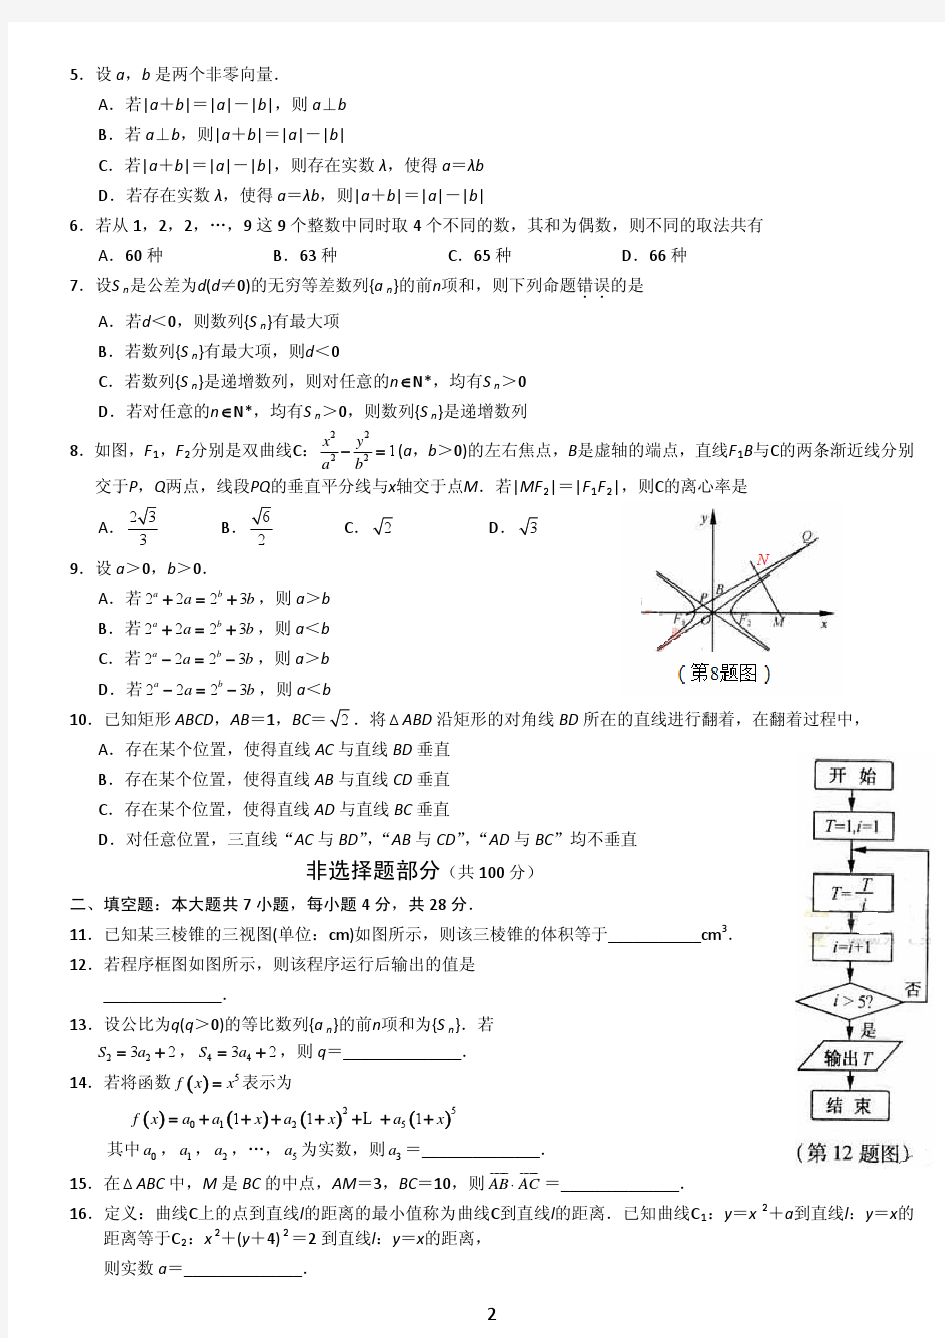 ◆2012年全国高考理科数学试题及答案-浙江卷